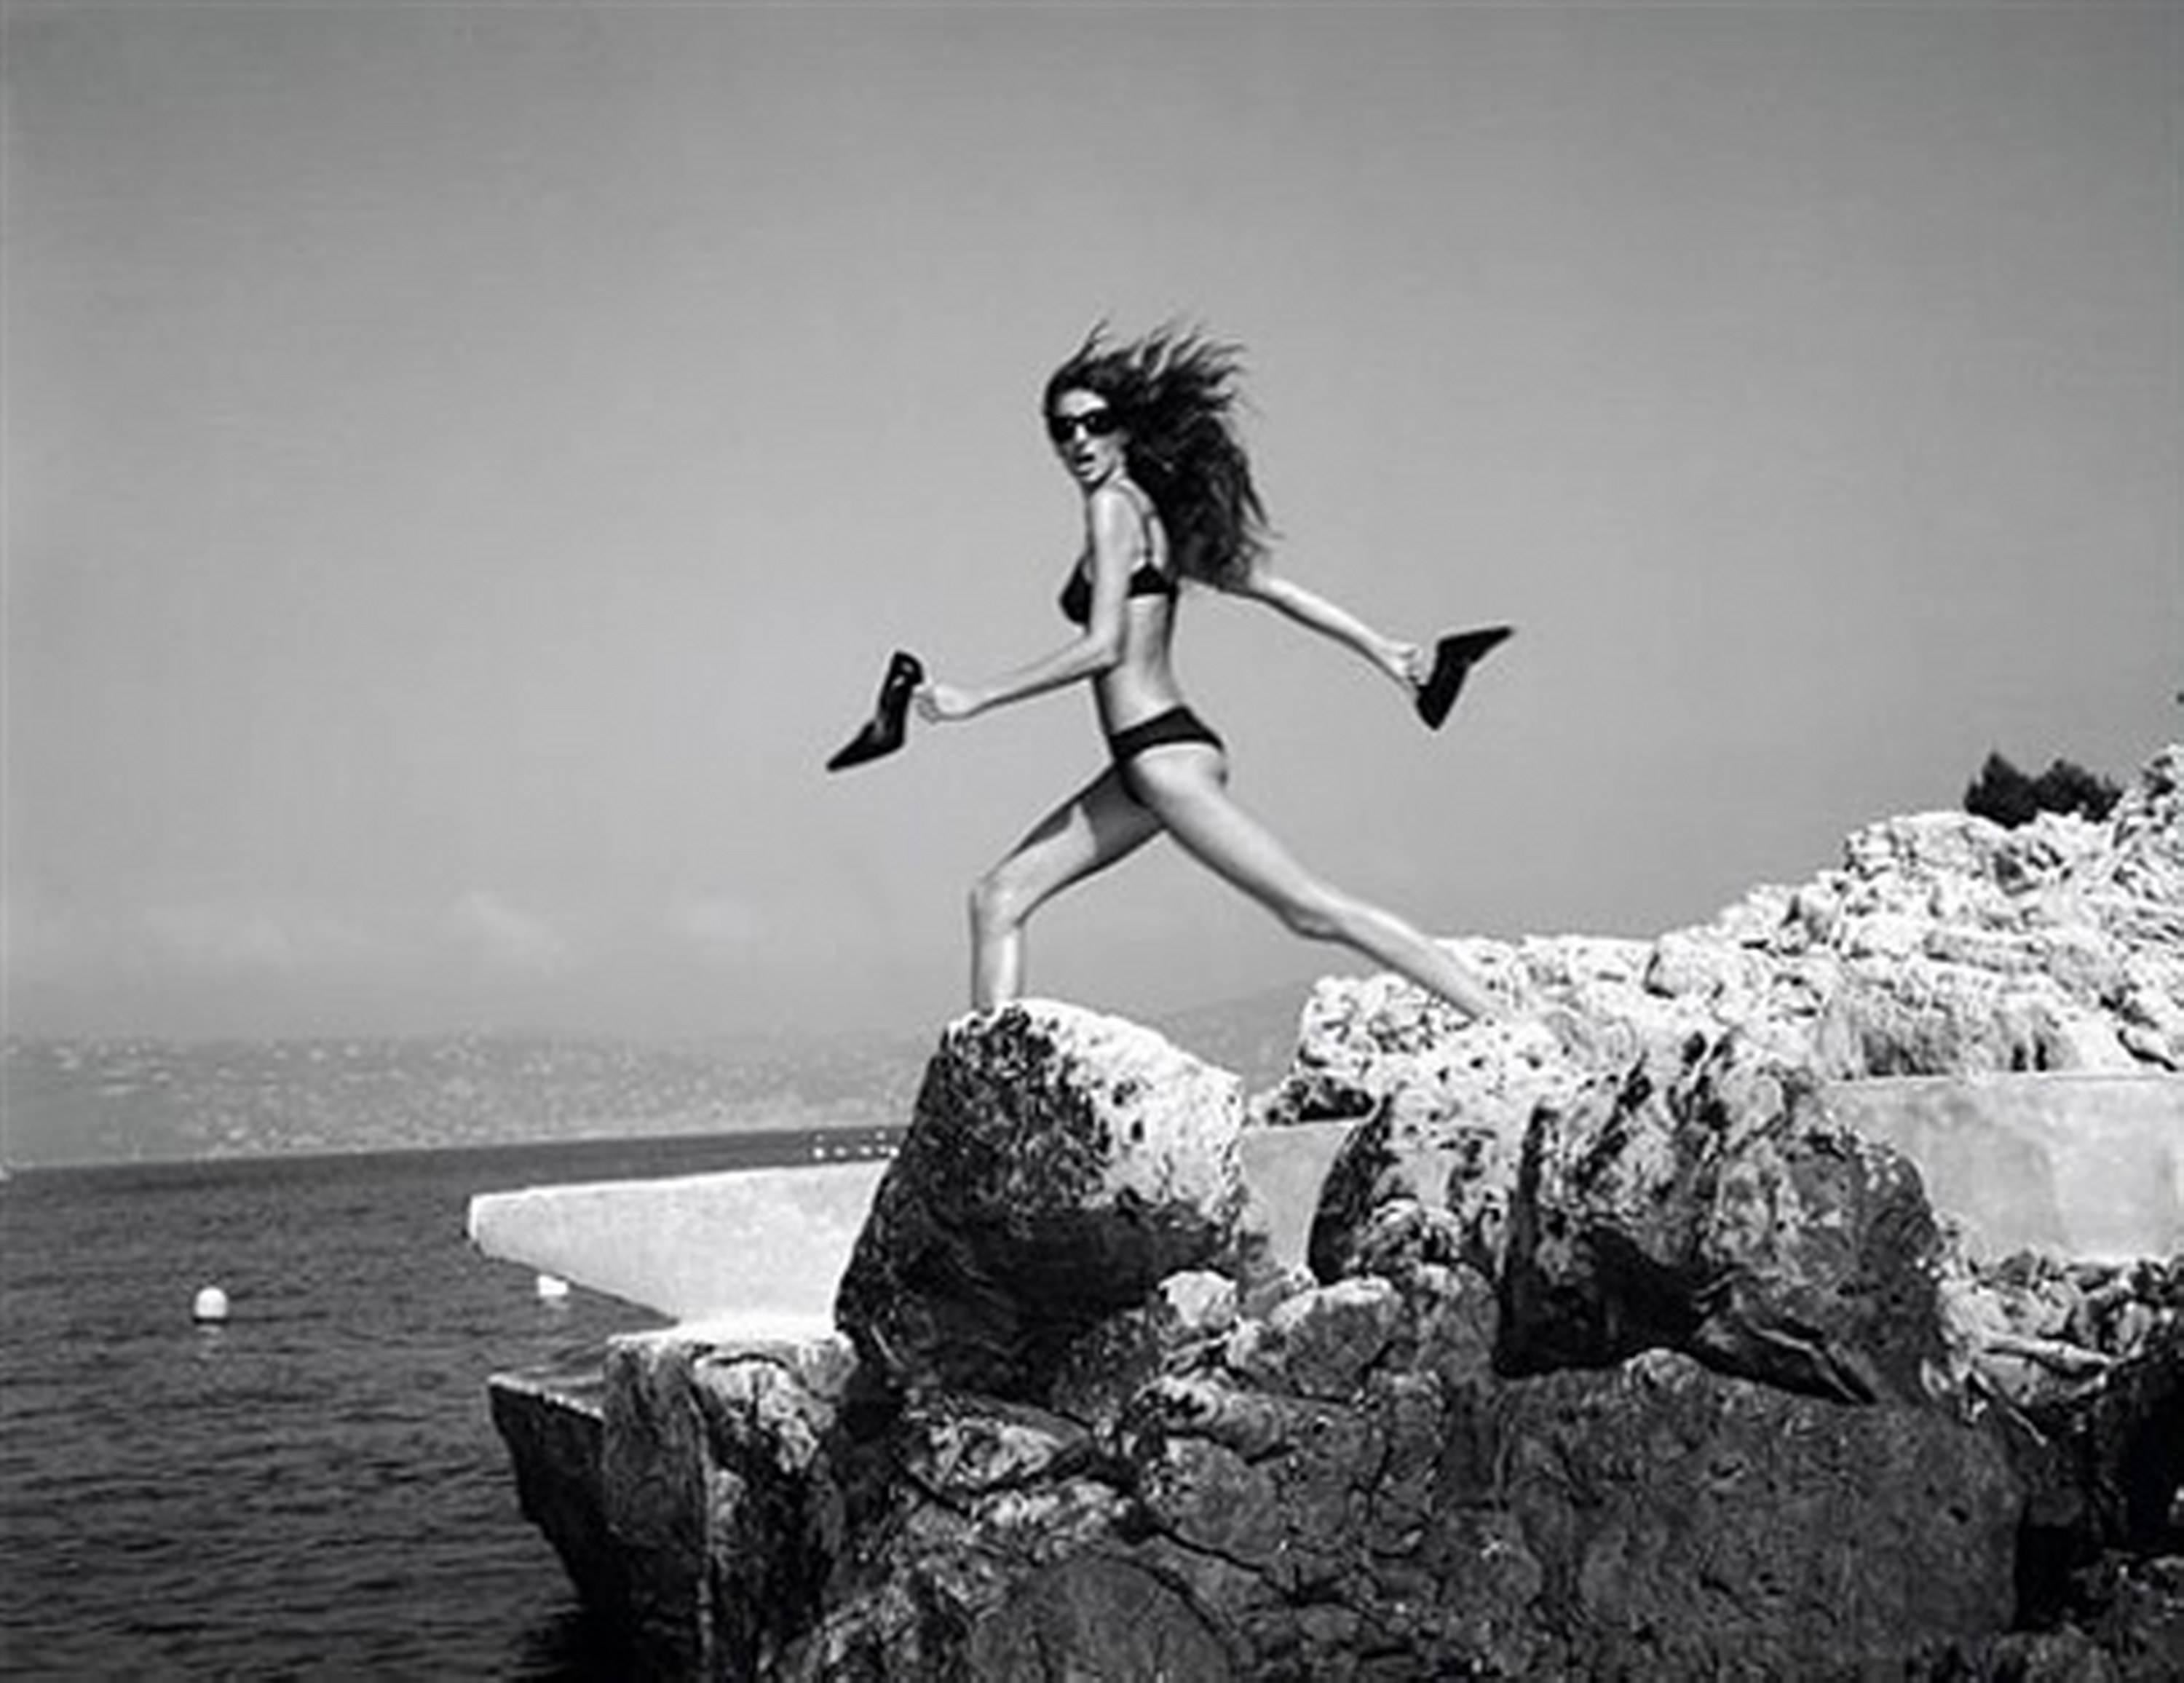 Michel Comte Black and White Photograph - Supermodel Gisele Bündchen in black bikini on rocks by the sea near Cannes 